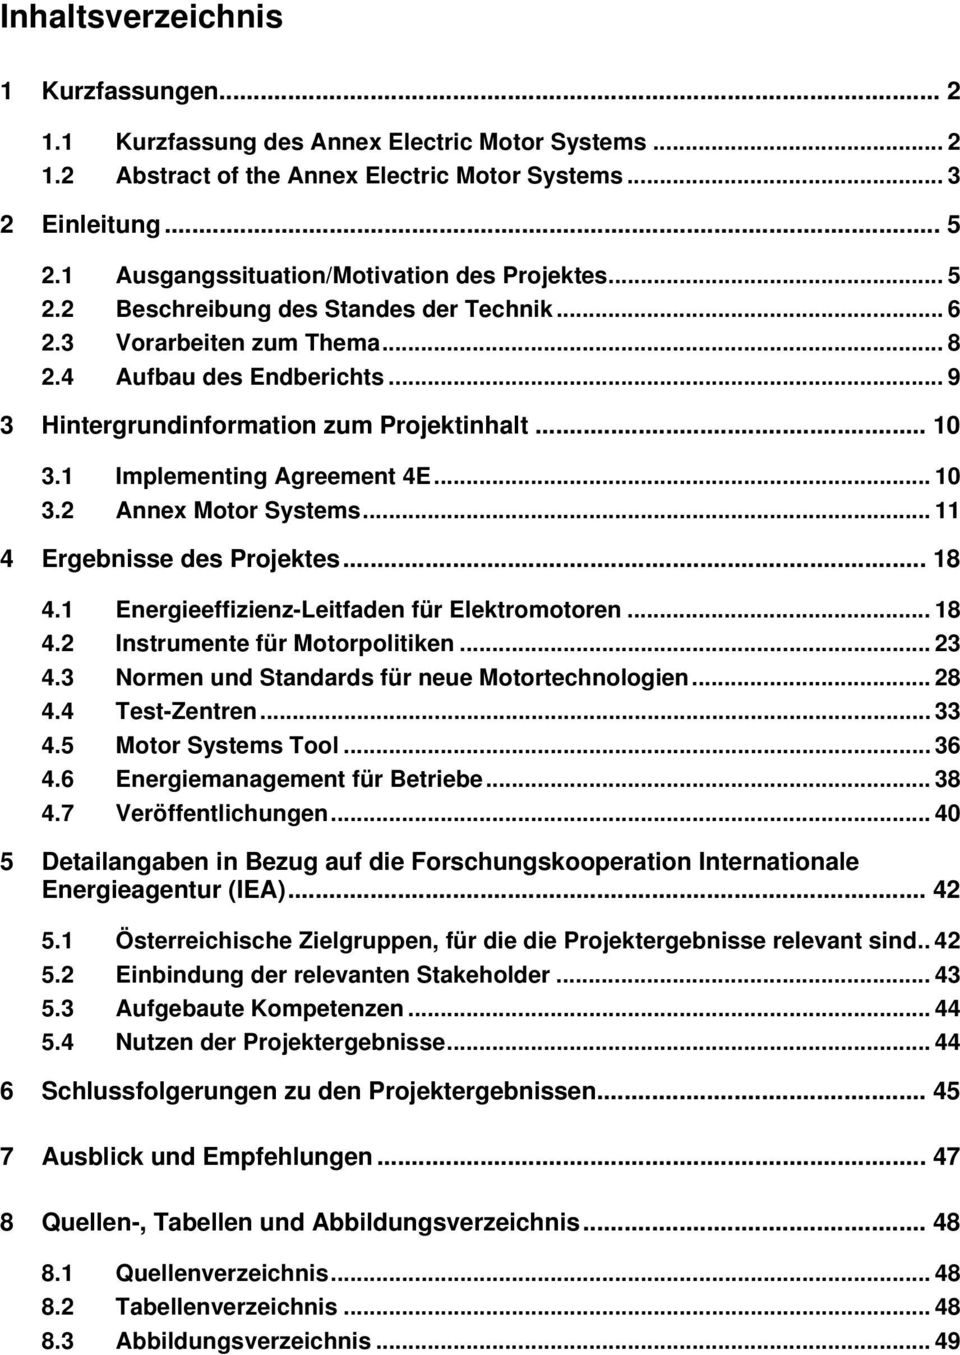 .. 10 3.1 Implementing Agreement 4E... 10 3.2 Annex Motor Systems... 11 4 Ergebnisse des Projektes... 18 4.1 Energieeffizienz-Leitfaden für Elektromotoren... 18 4.2 Instrumente für Motorpolitiken.